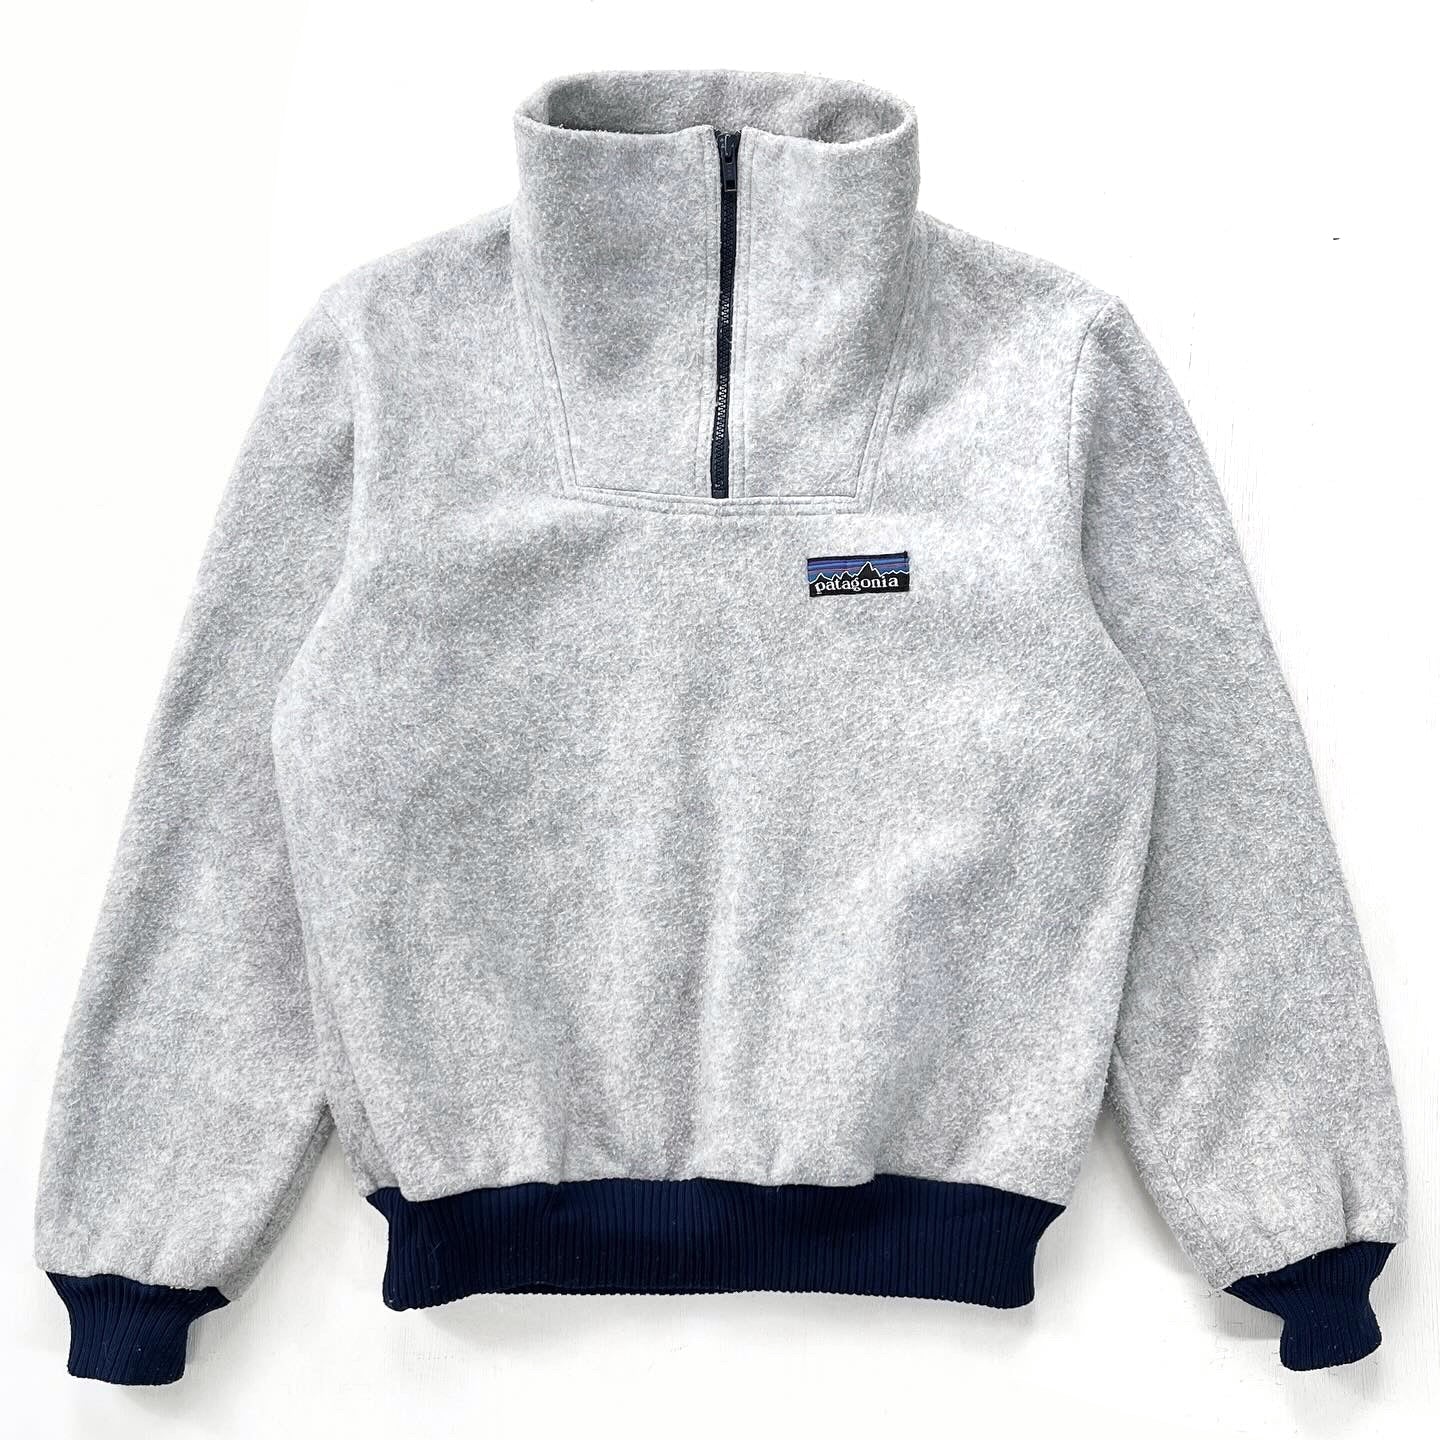 1982 Patagonia Bunting Half-Zip Fleece Sweater, Grey & Navy (M)